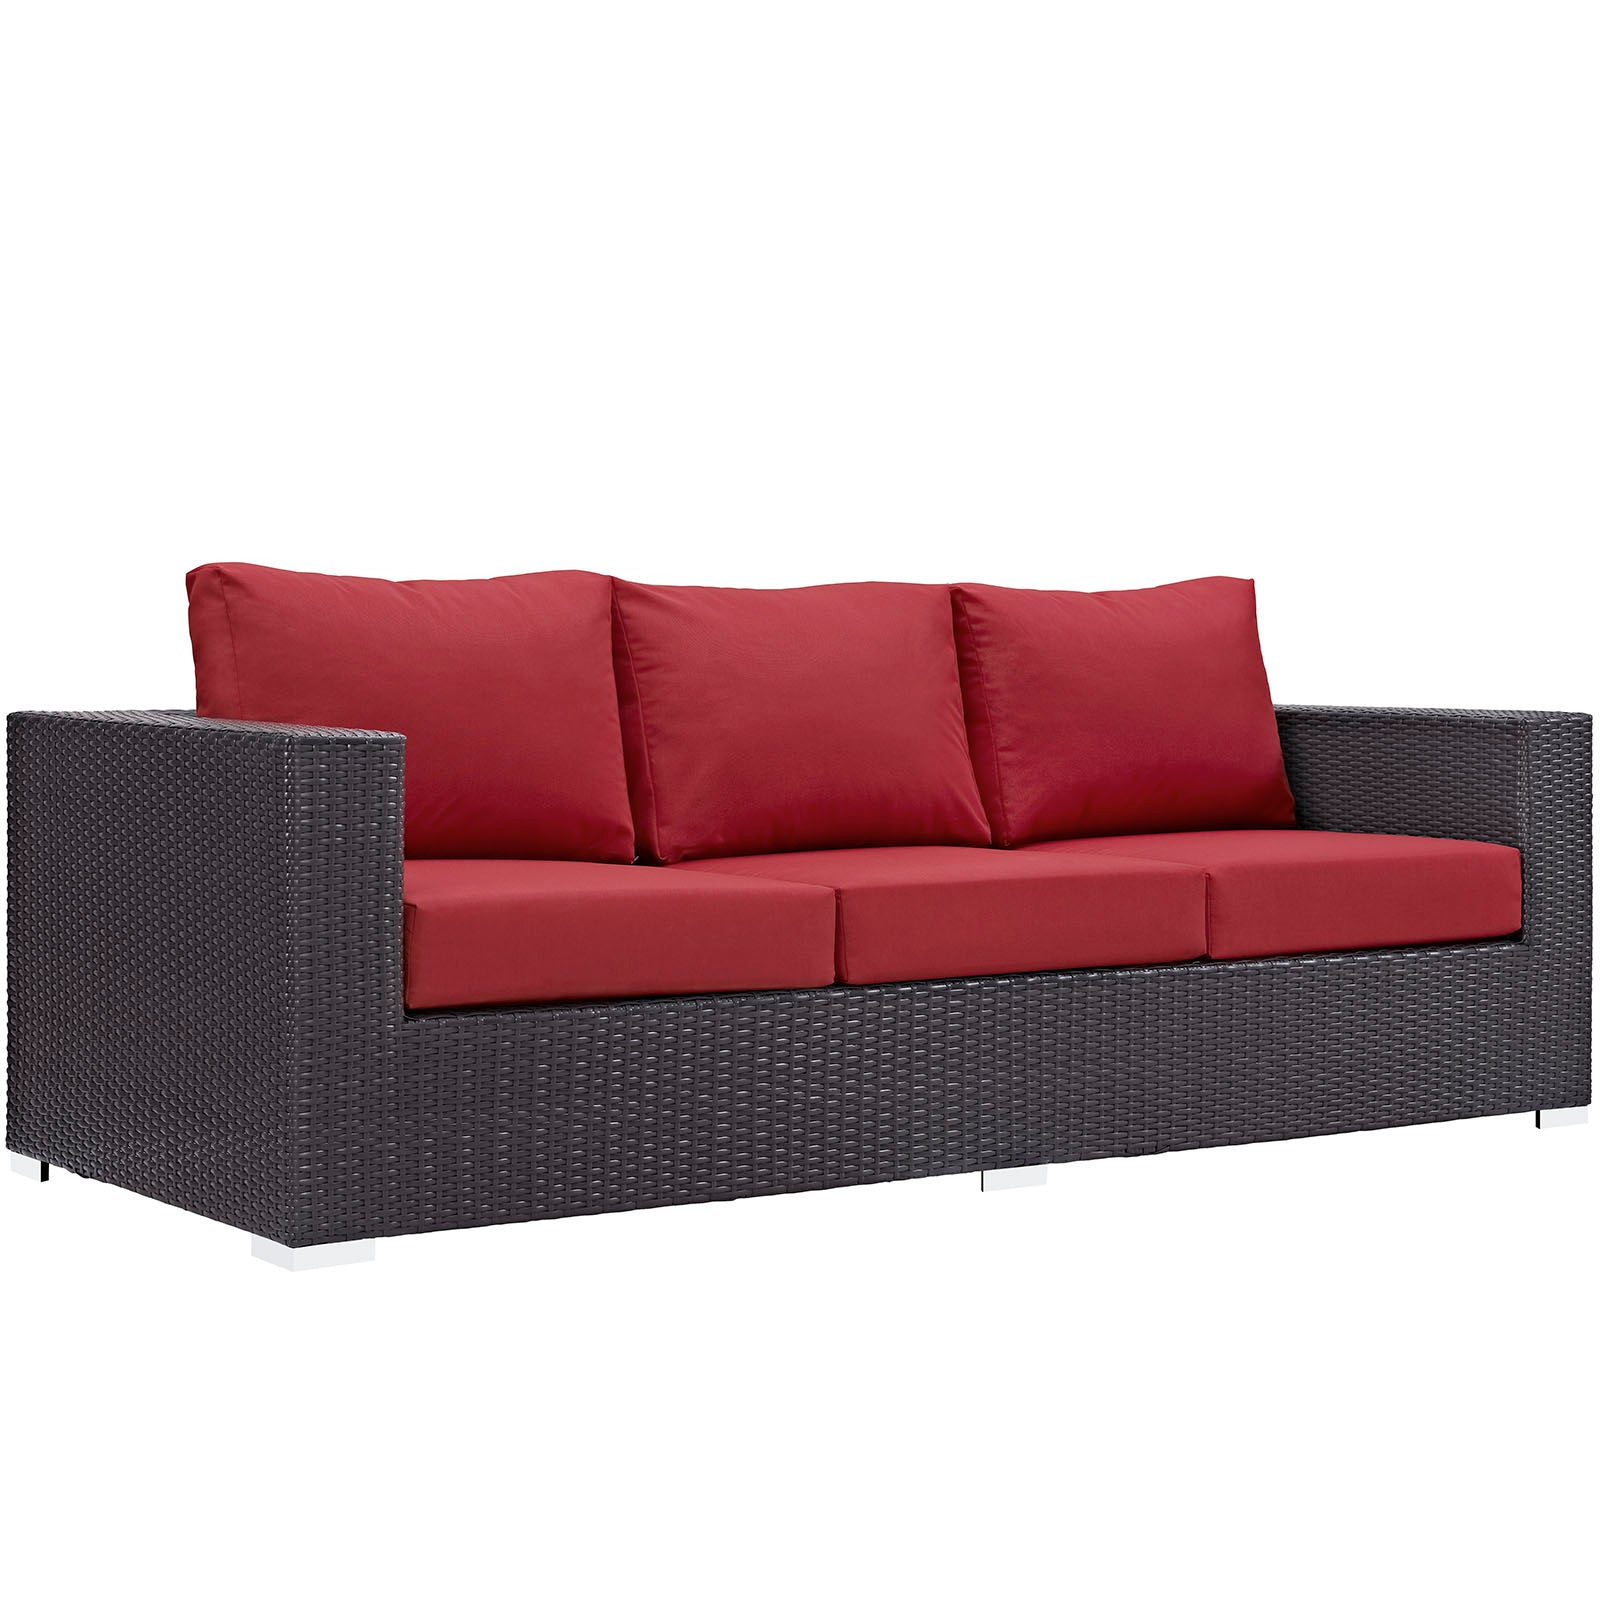 Modway - Convene 3 Piece Outdoor Patio Sofa Set - EEI-2178